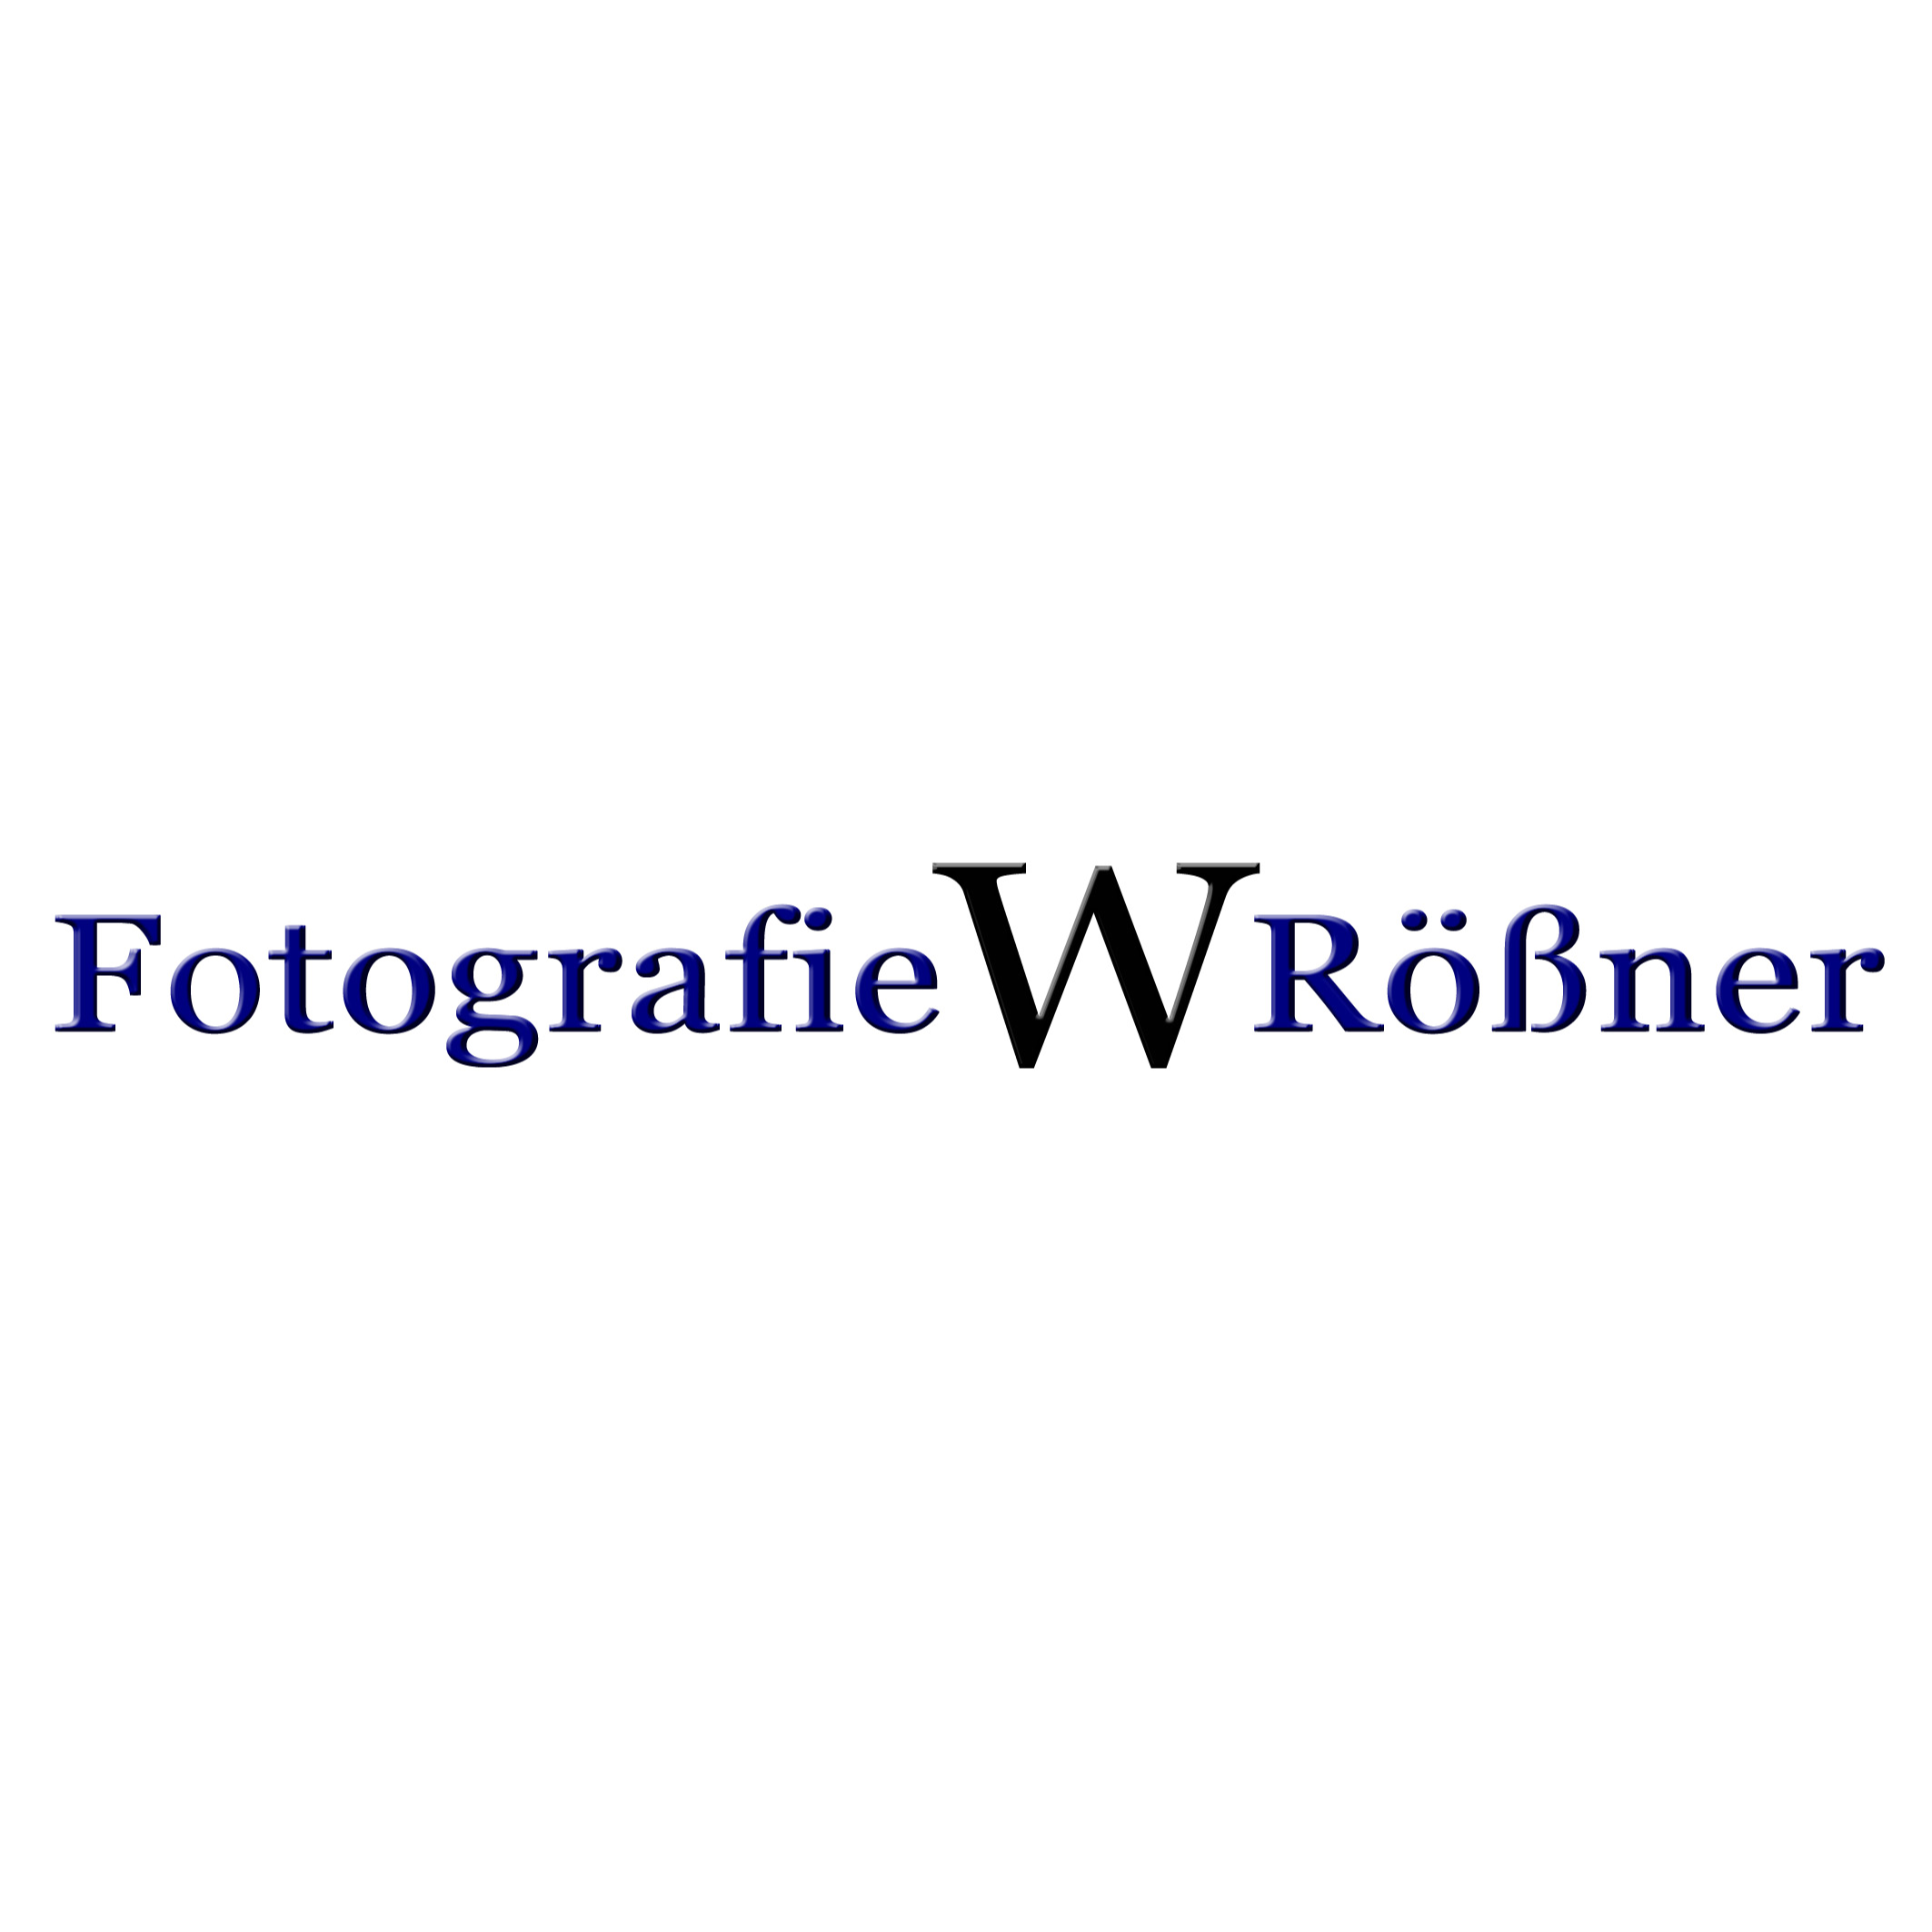 Fotografie W. Rößner in Wiesentheid - Logo